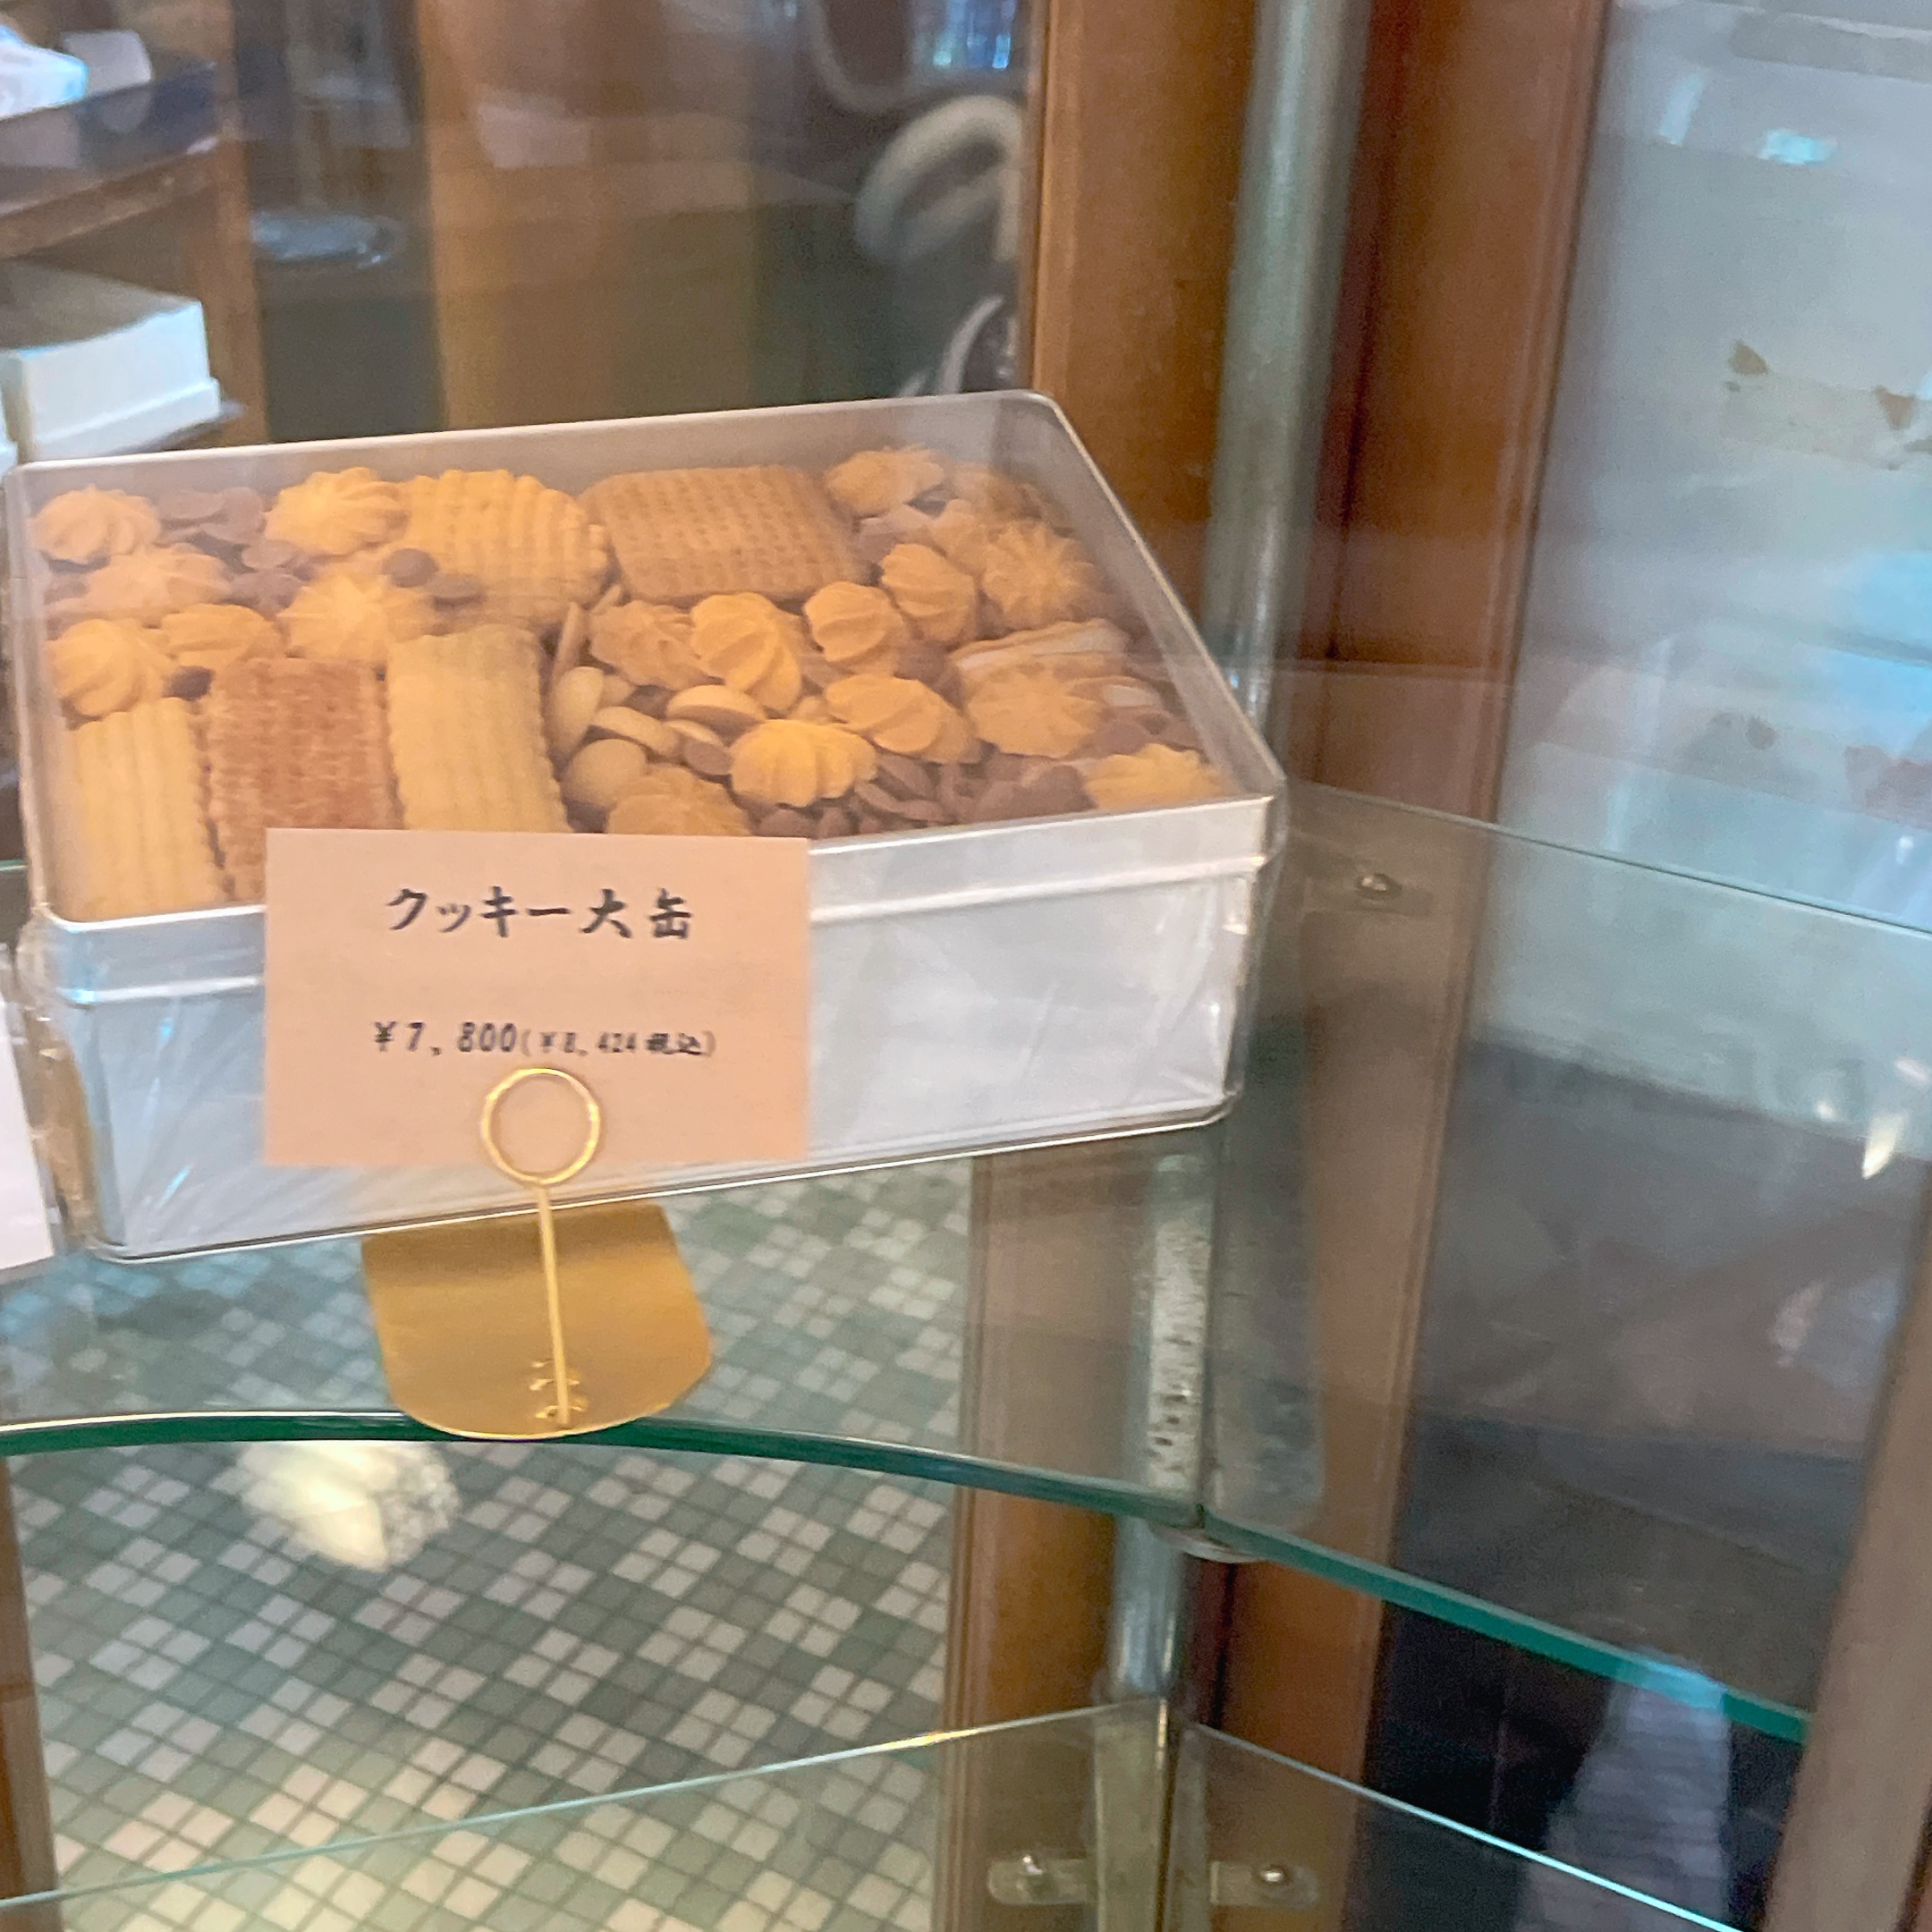 京都 村上開新堂のクッキー缶の予約に出かけました〜注文方法やお値段